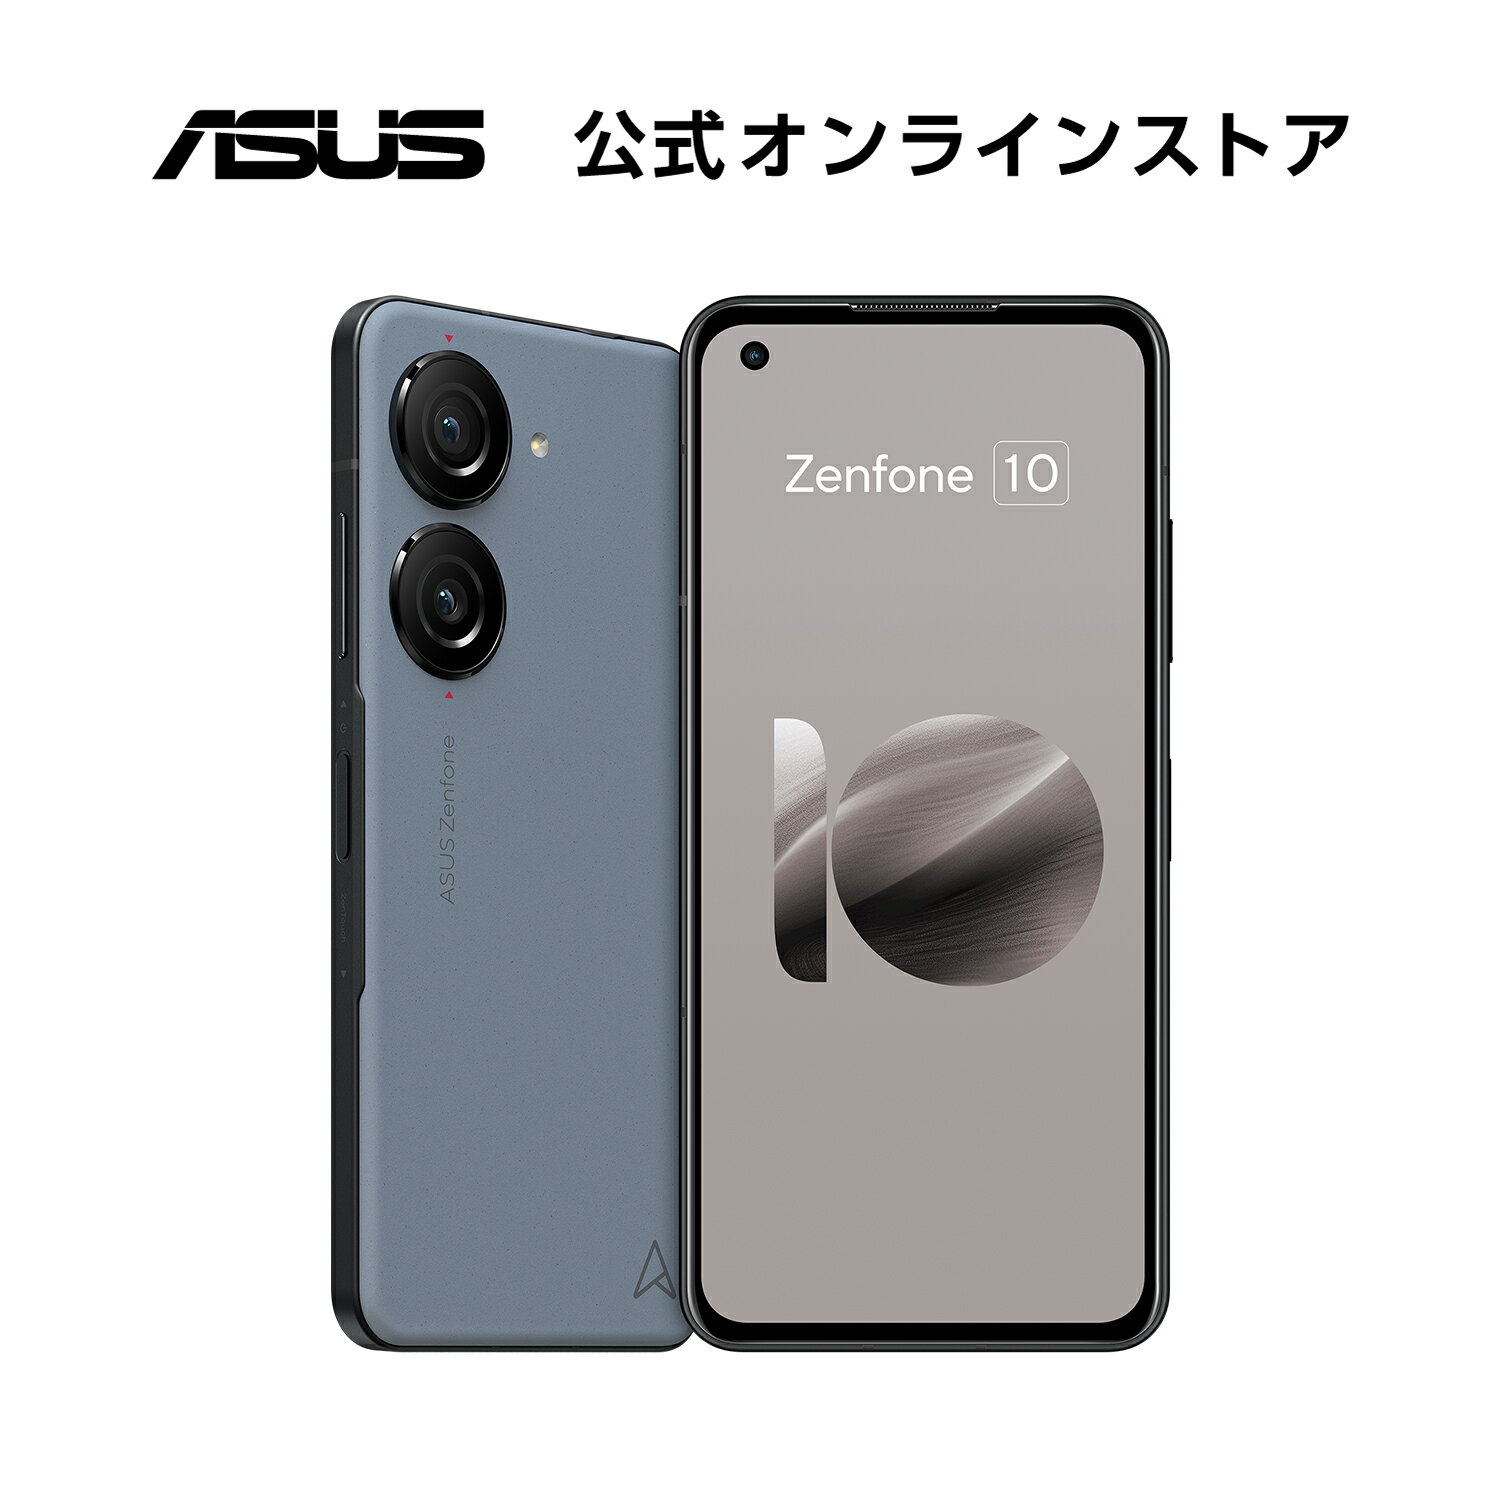 SIMフリースマートフォン ASUS Zenfone 10 メモリ 8GB ストレージ 256GB 5.9型 ワイド AMOLED Qualcomm Snapdragon 8 Gen 2 防水防塵 IP65 IP68 Android 13 5G FeliCa おサイフケータイ 新品 おしゃれ スターリーブルー ZF10-BL8S256